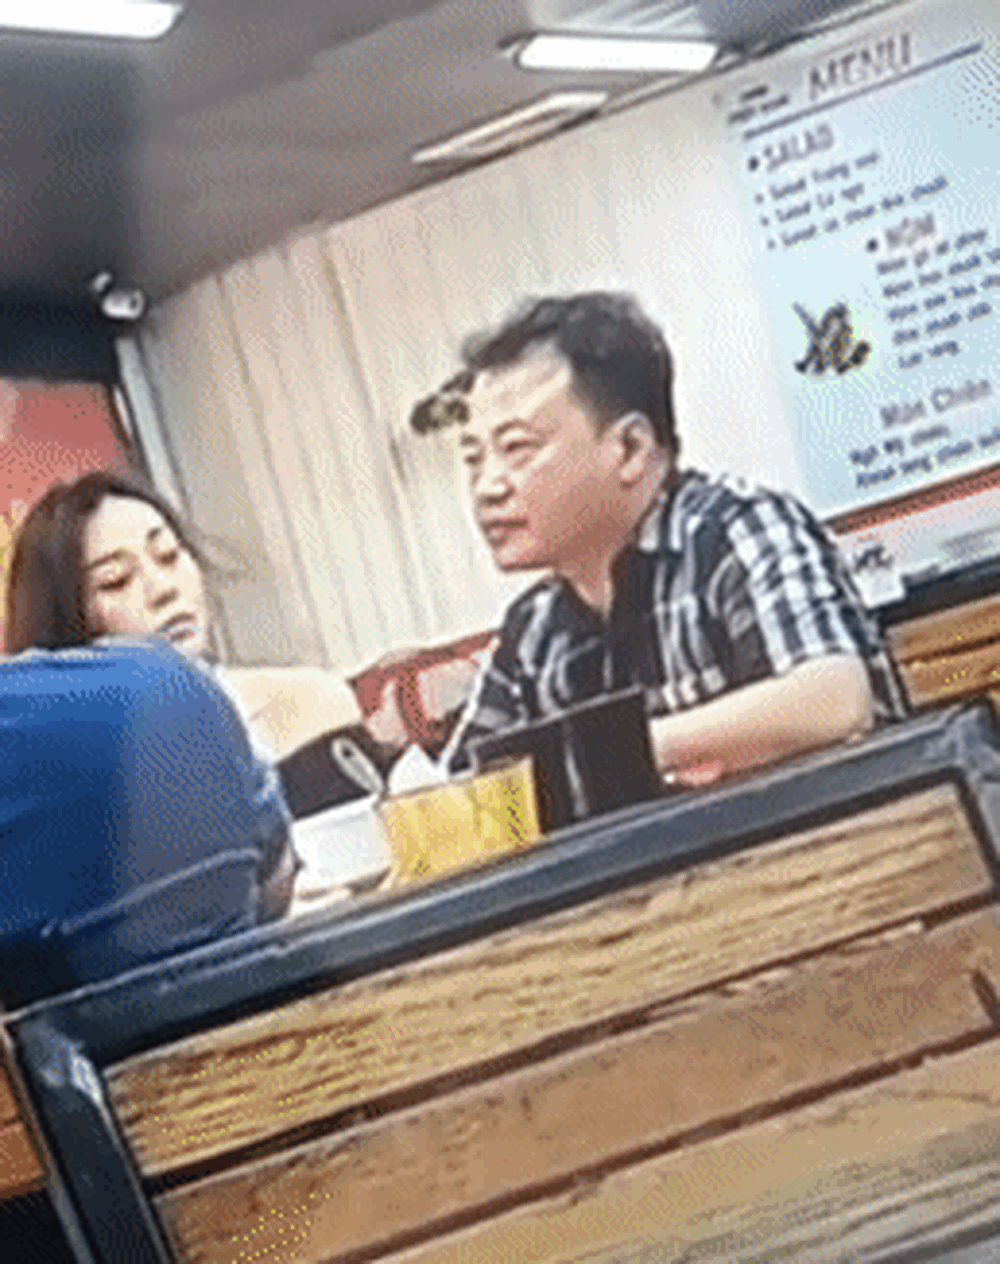  Shark Bình - Phương Oanh lại bị lan truyền clip quay lén, netizen lên tiếng: “Đi ăn cũng không yên”  - Ảnh 2.